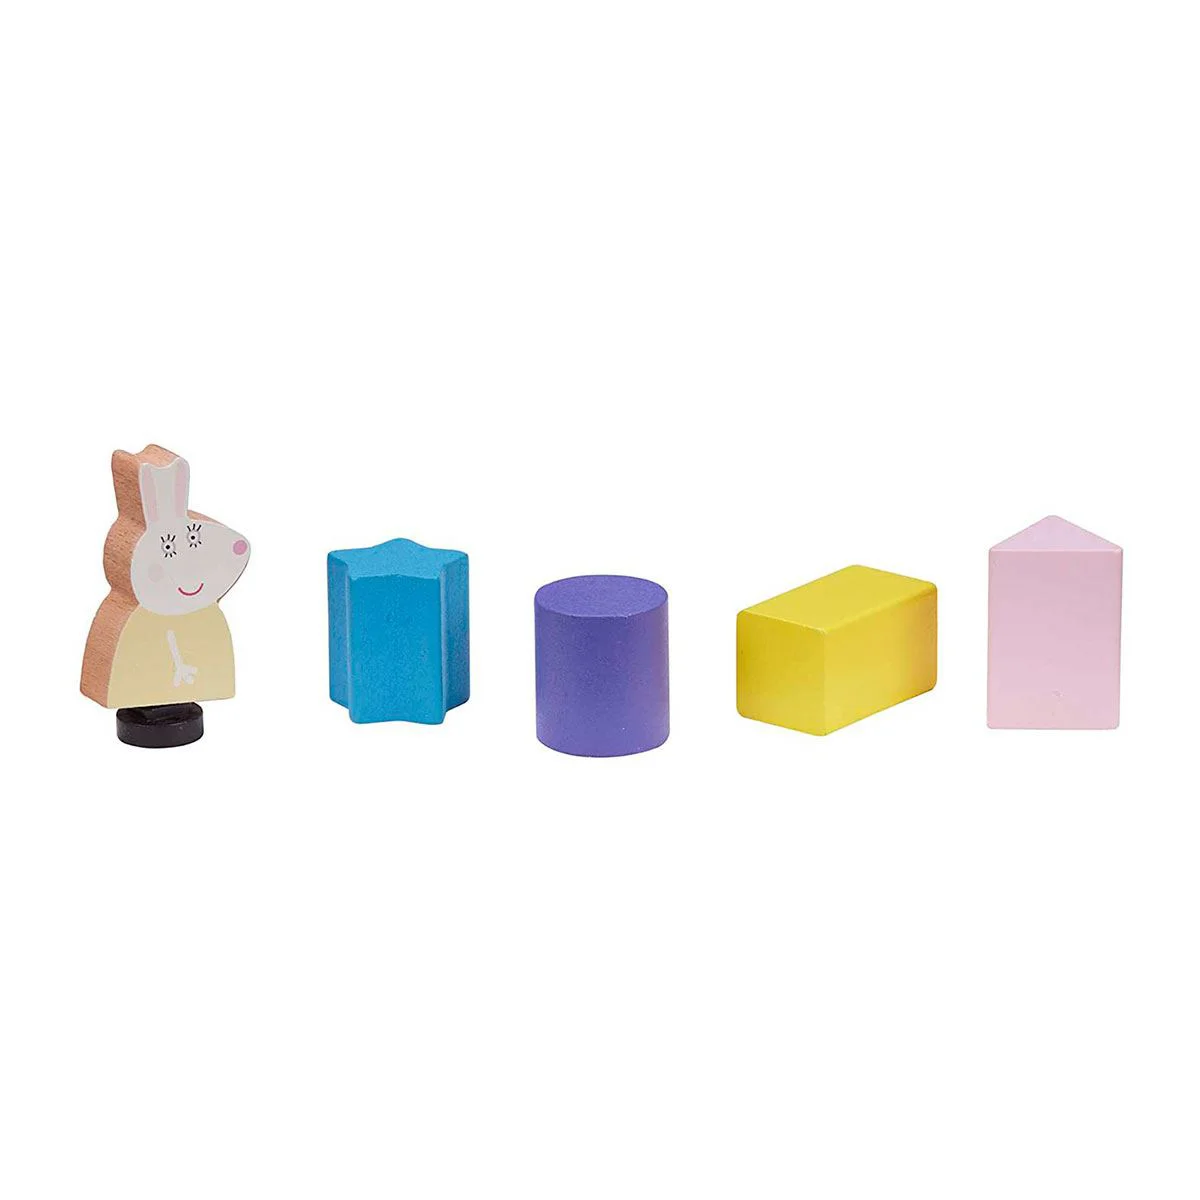 Set de joaca din lemn Peppa Pig Autobuz-Sorter cu accesorii si figurina